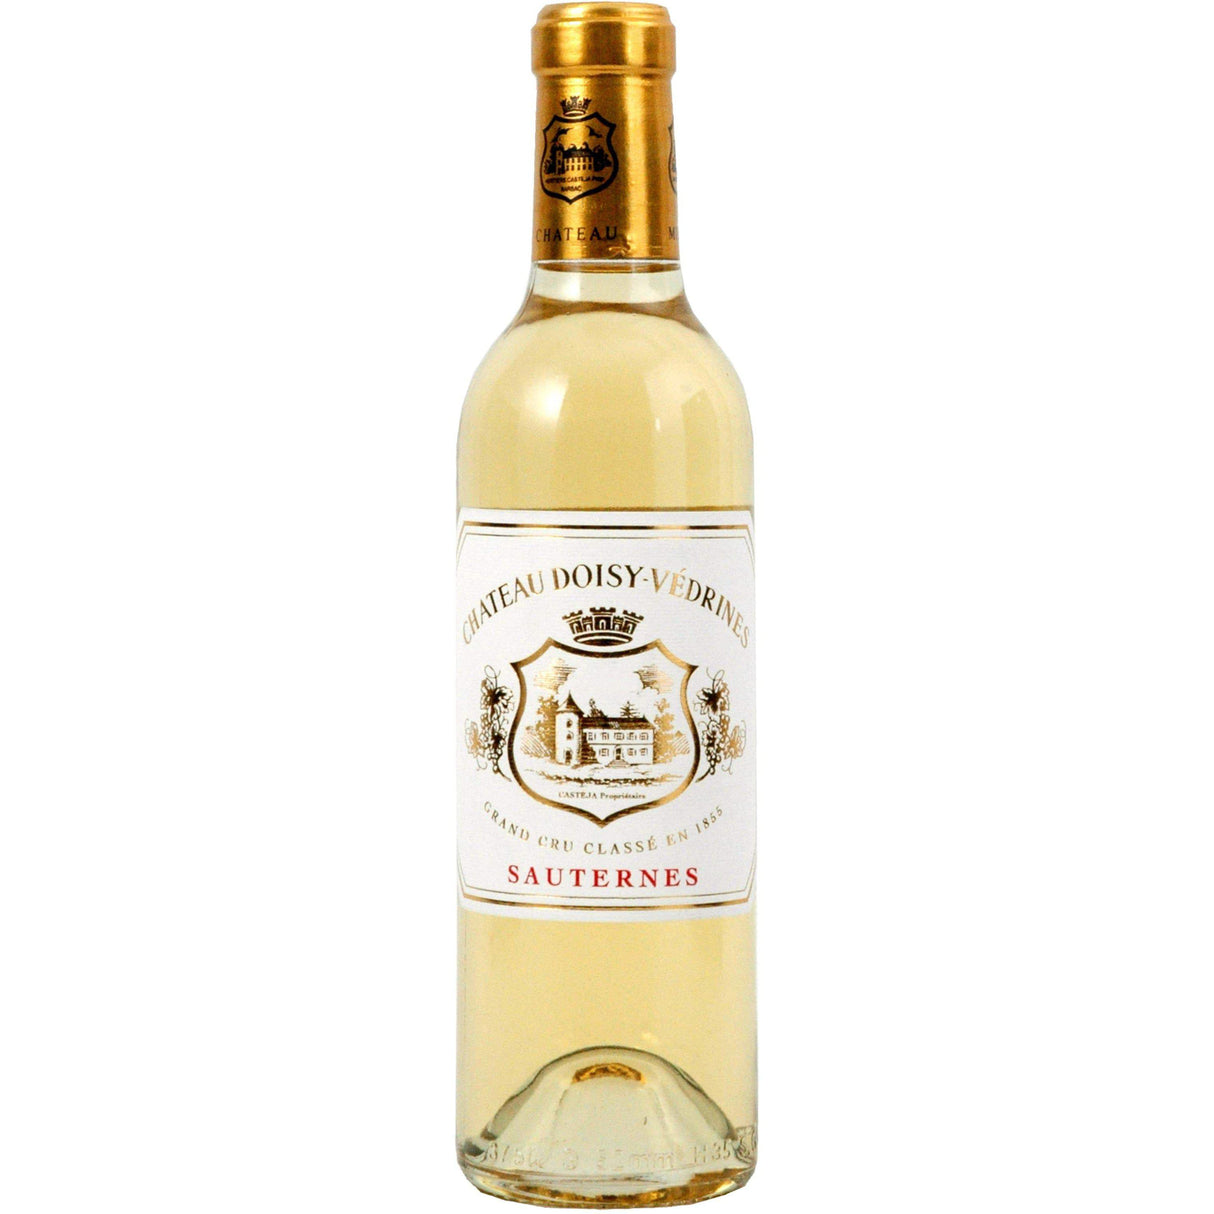 Chateau Doisy Védrines, 2ème G.C.C, 1855 (Sauternes) 375ml 2018-White Wine-World Wine